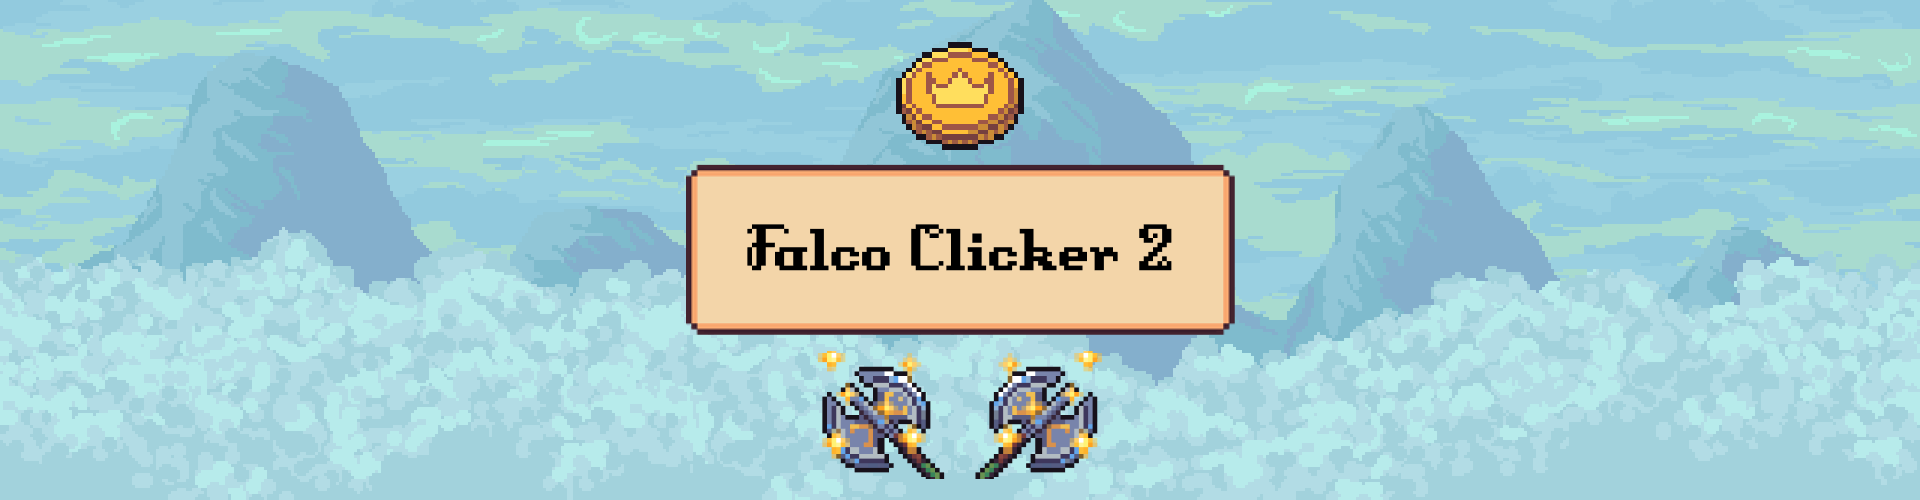 Falco Clicker 2